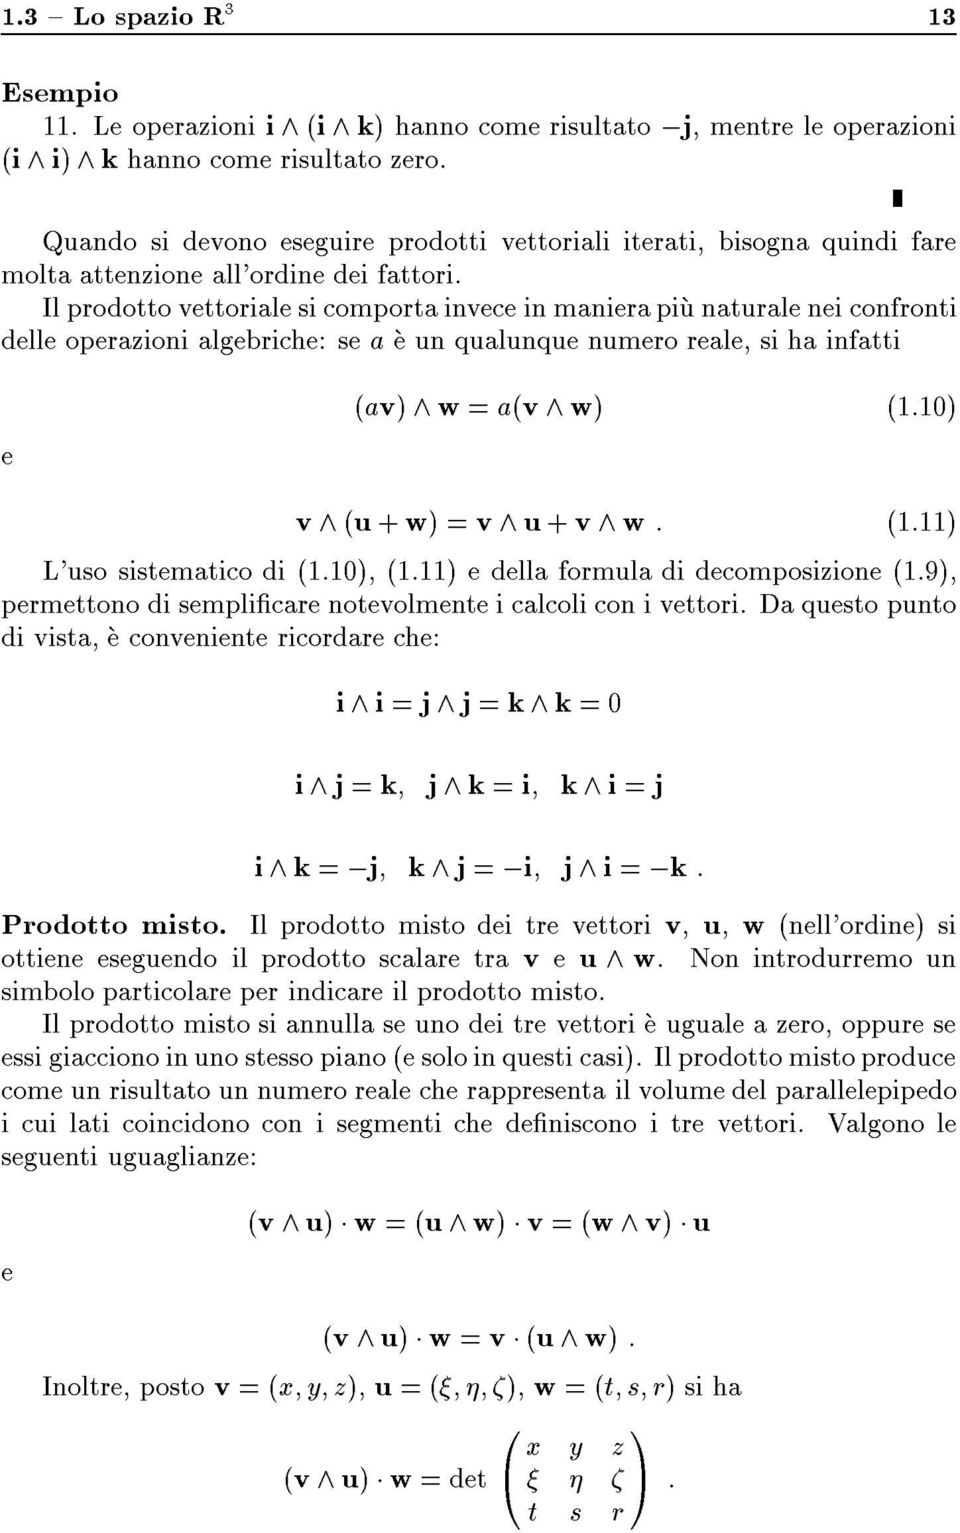 Il prodotto vettoriale si comporta invece in maniera piu naturale nei confronti delle operazioni algebriche: se a e un qualunque numero reale, si ha infatti e (av) ^ w = a(v ^ w) (1.